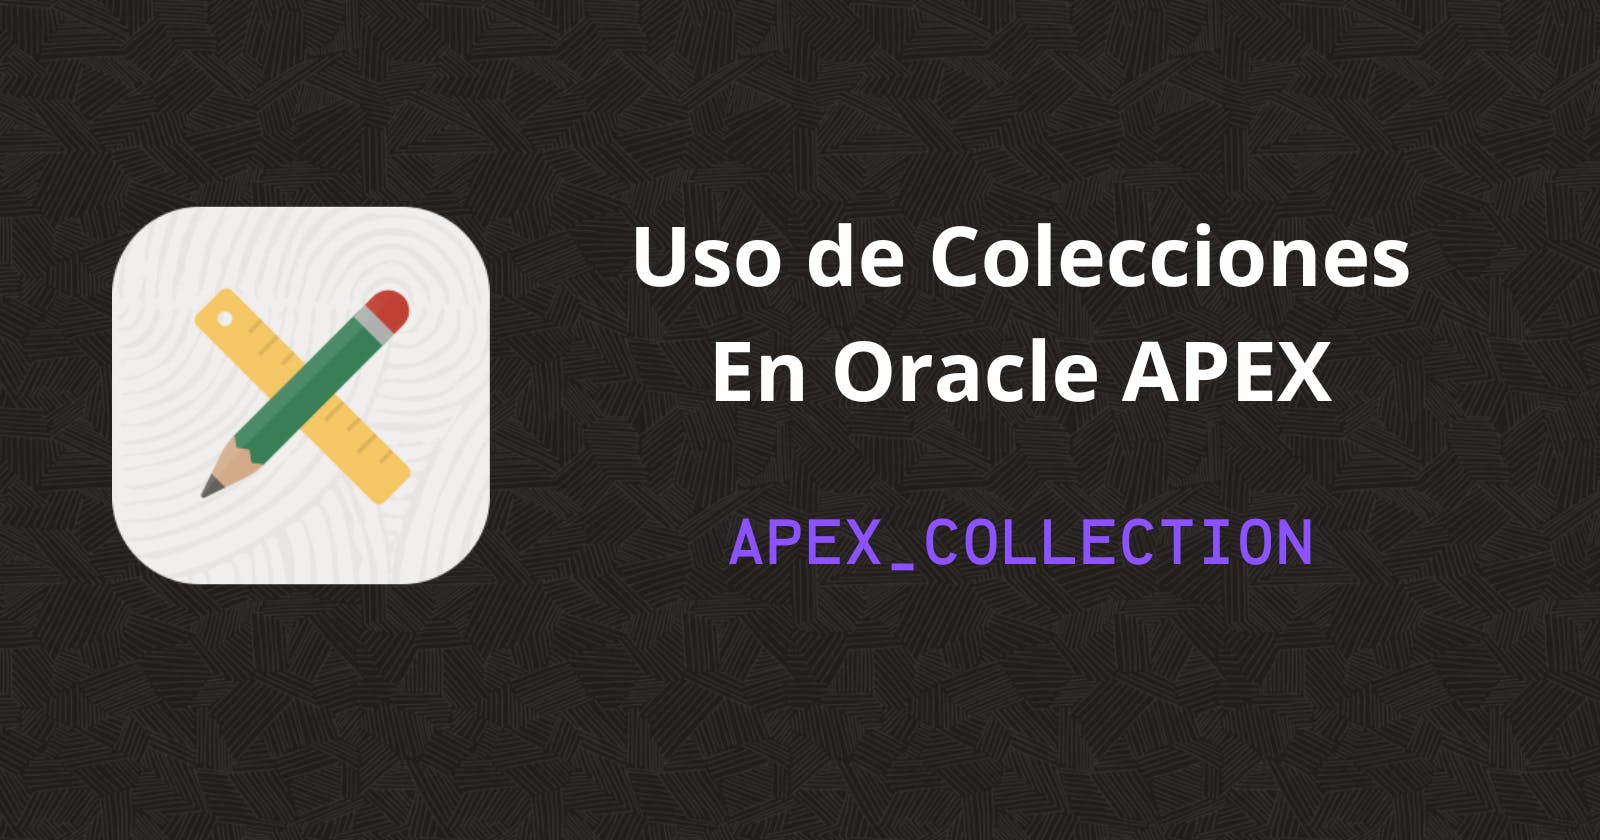 Uso de Colecciones en Oracle APEX